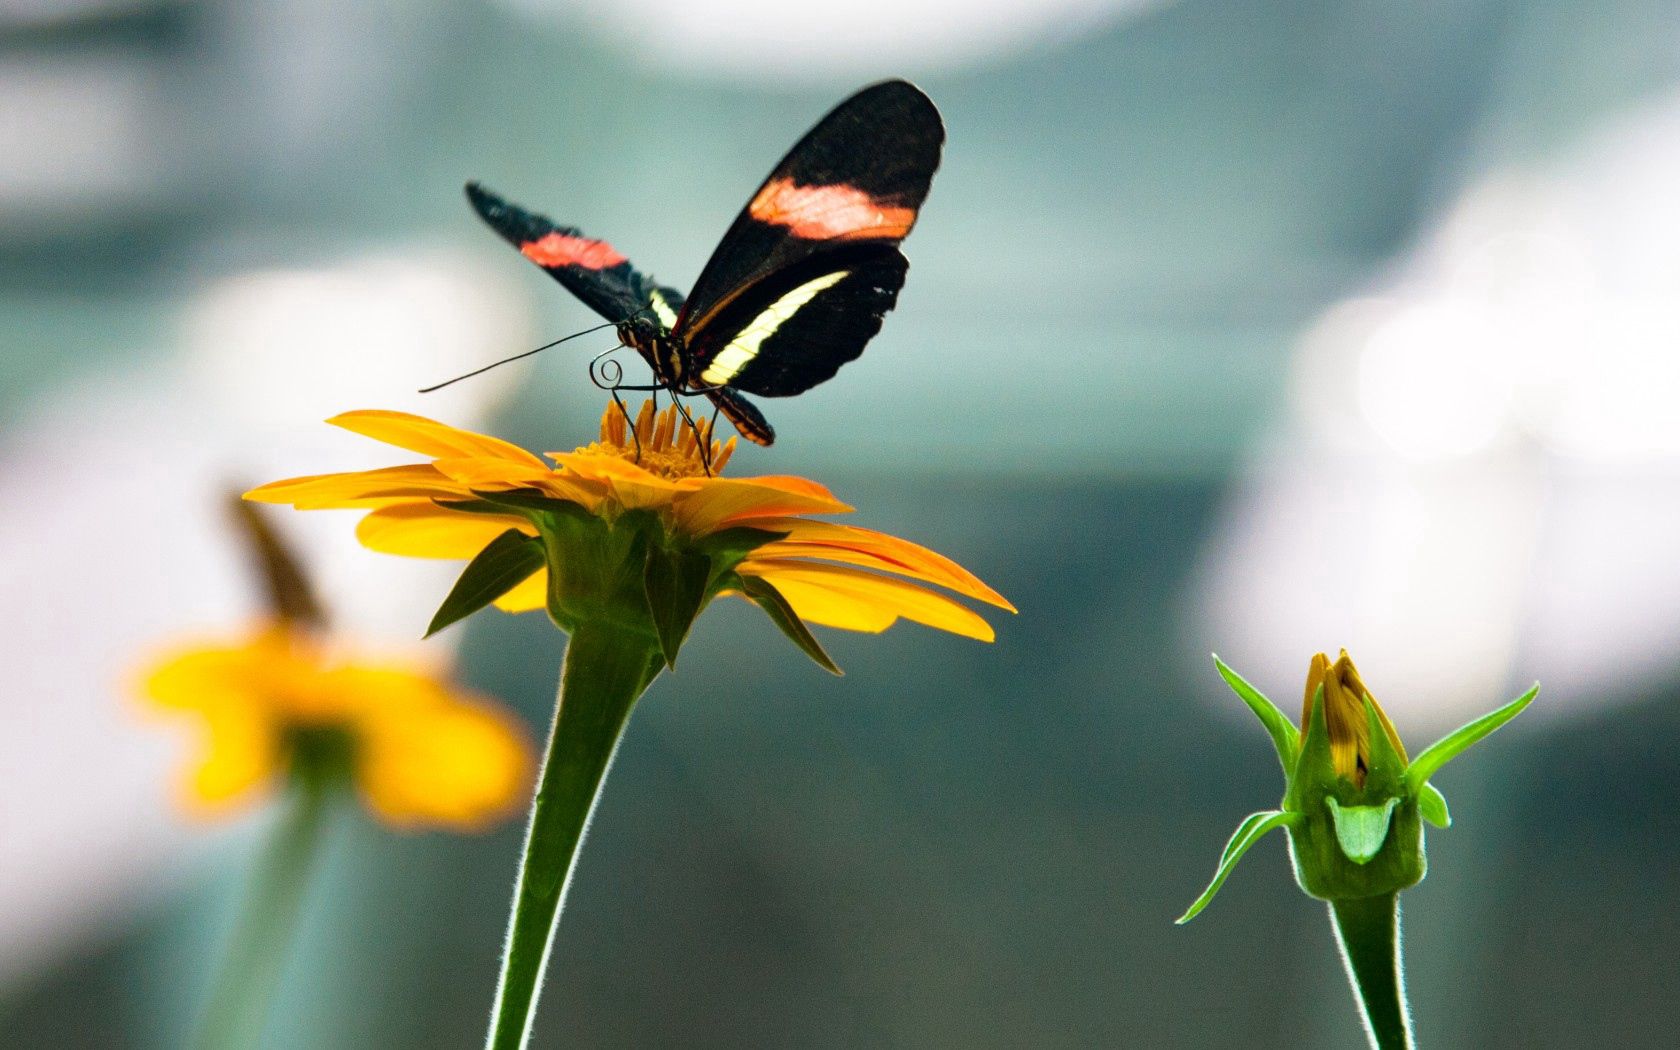 Descarga gratuita de fondo de pantalla para móvil de Insecto, Macro, Naturaleza, Mariposa, Flores.